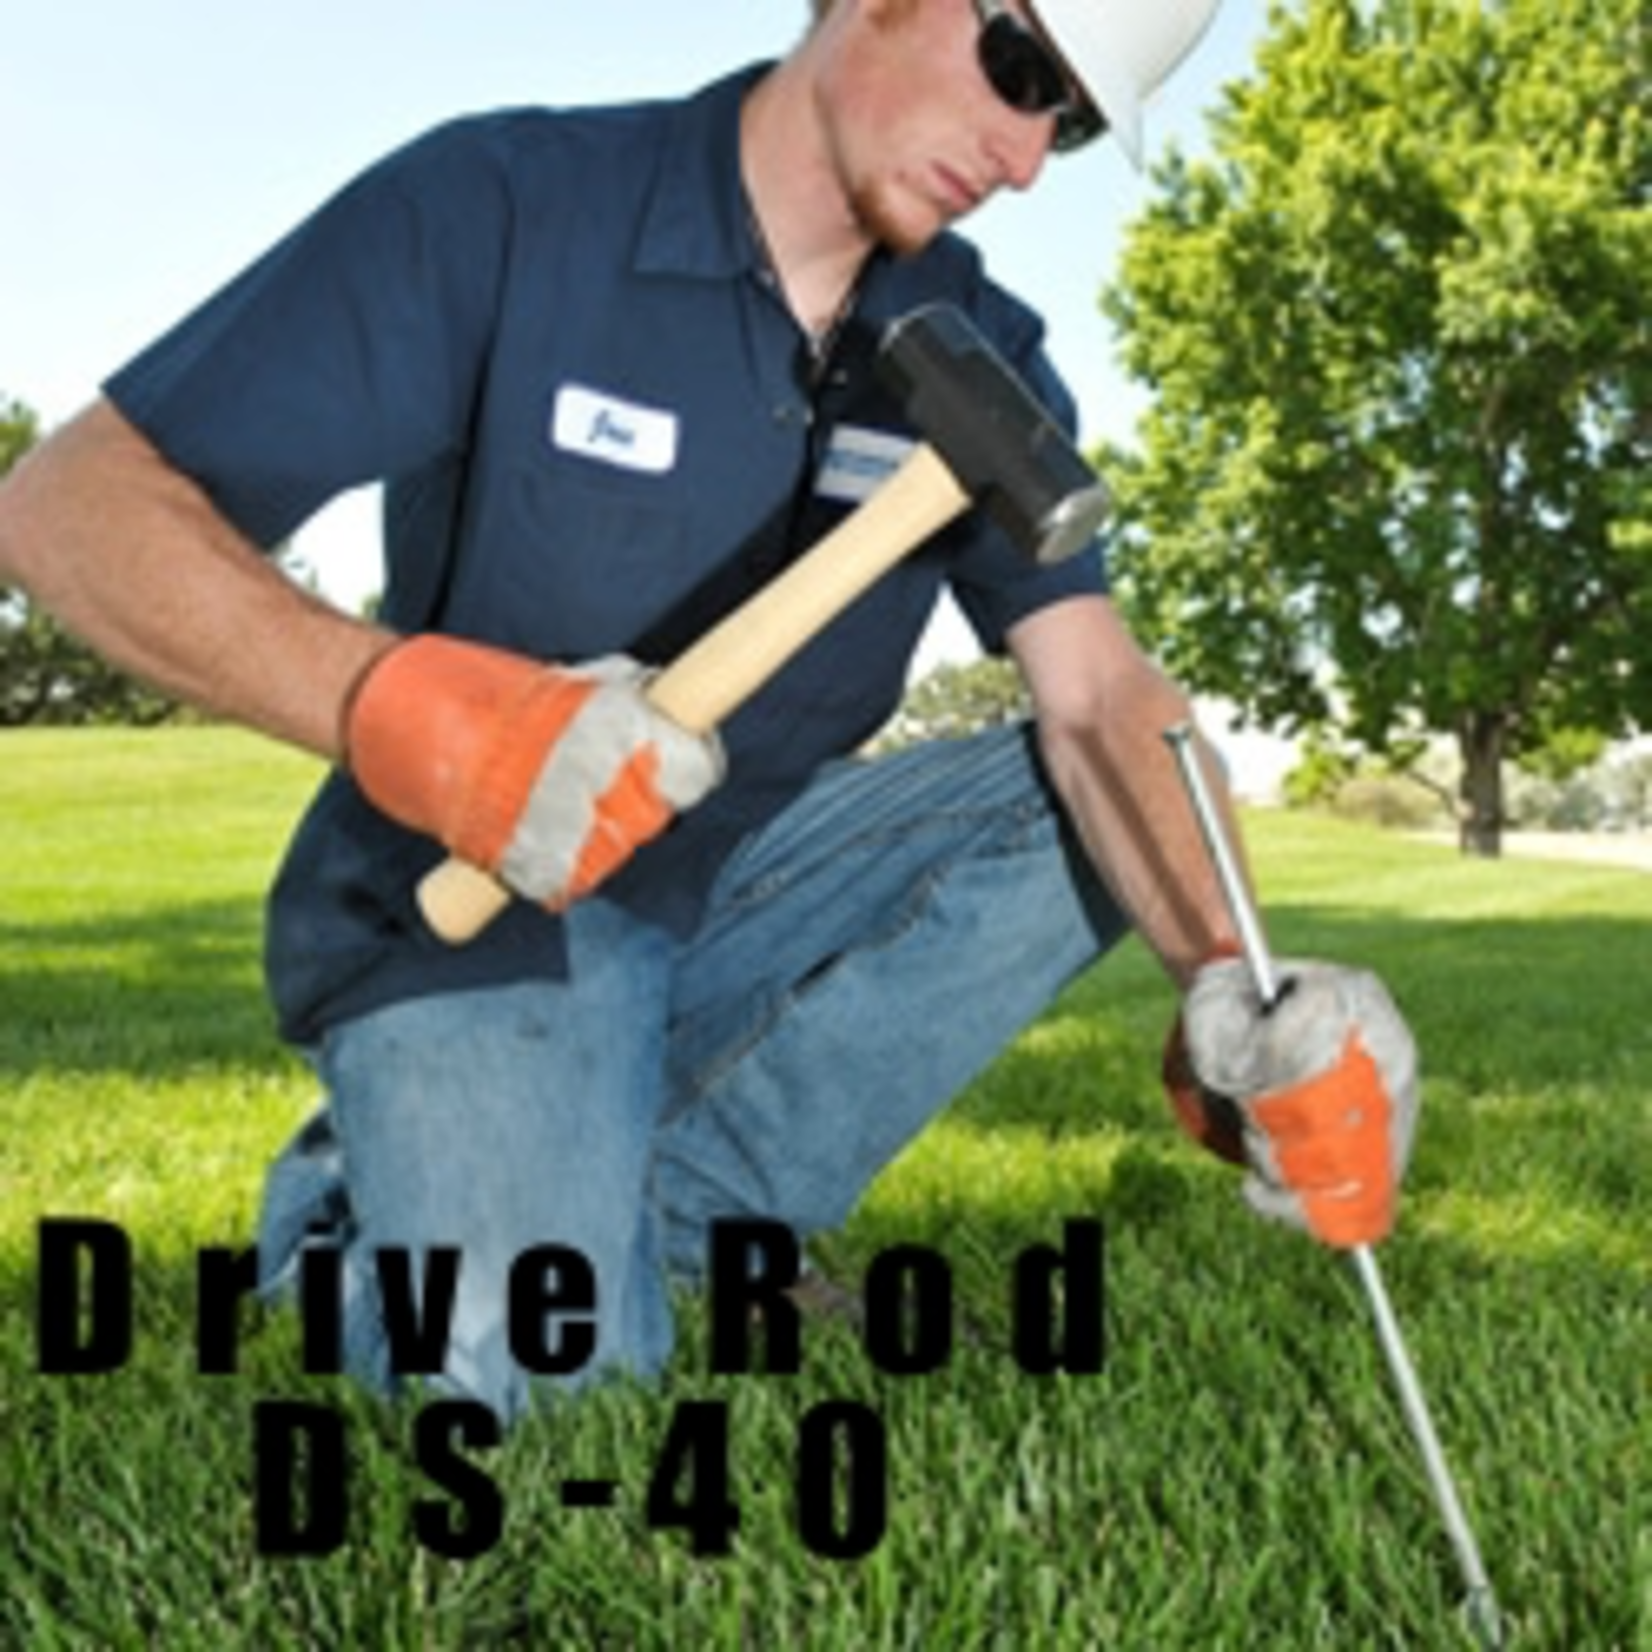 DuckBill Drive Rod Duckbill DS-40 20" Long